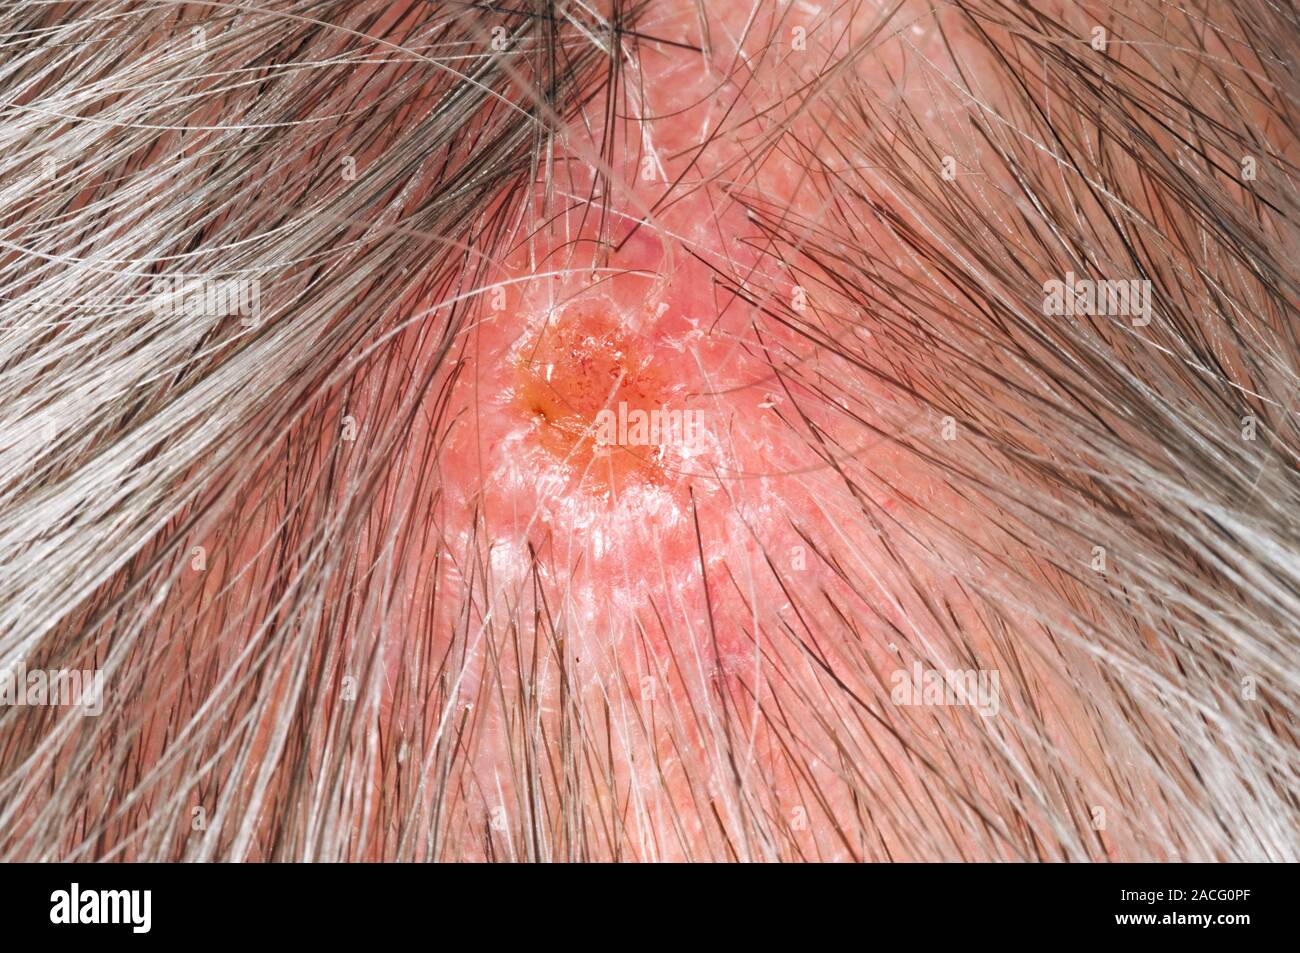 Cerca del cuero cabelludo del anciano, mostrando el carcinoma de células  escamosas (cáncer de piel). Este segundo tipo más común de cáncer de piel  afecta a la up Fotografía de stock -